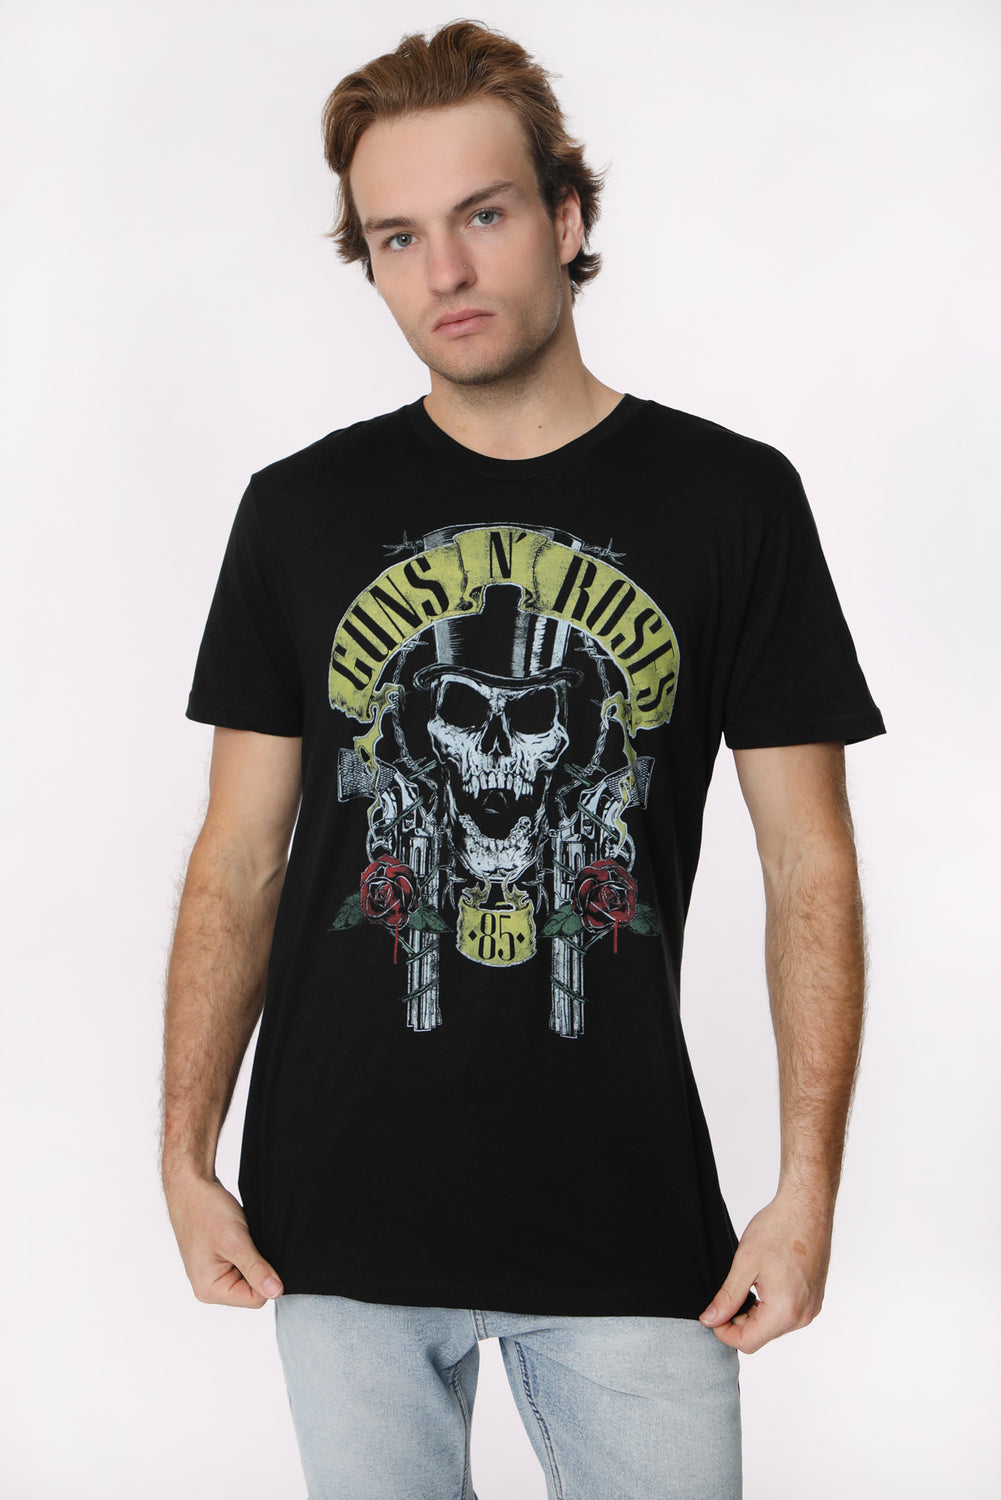 Mens Guns N' Roses T-Shirt Mens Guns N' Roses T-Shirt